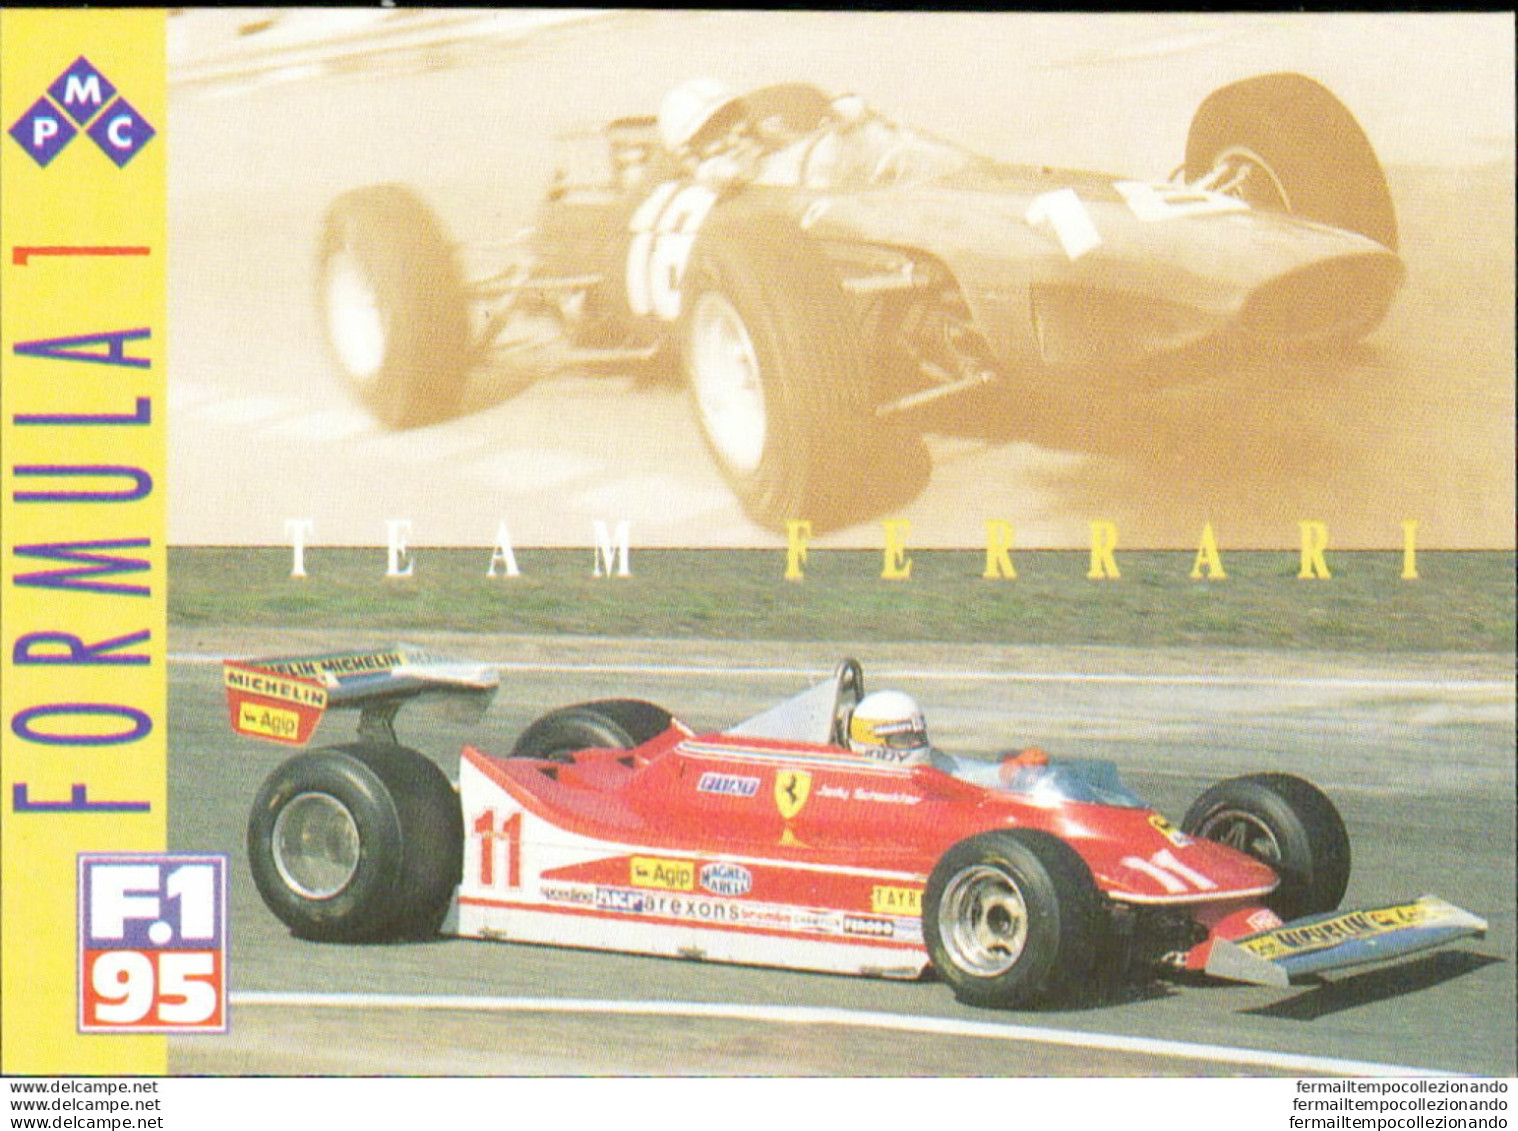 Bh49 1995 Formula 1 Gran Prix Collection Card Ferrari Team N 49 - Kataloge